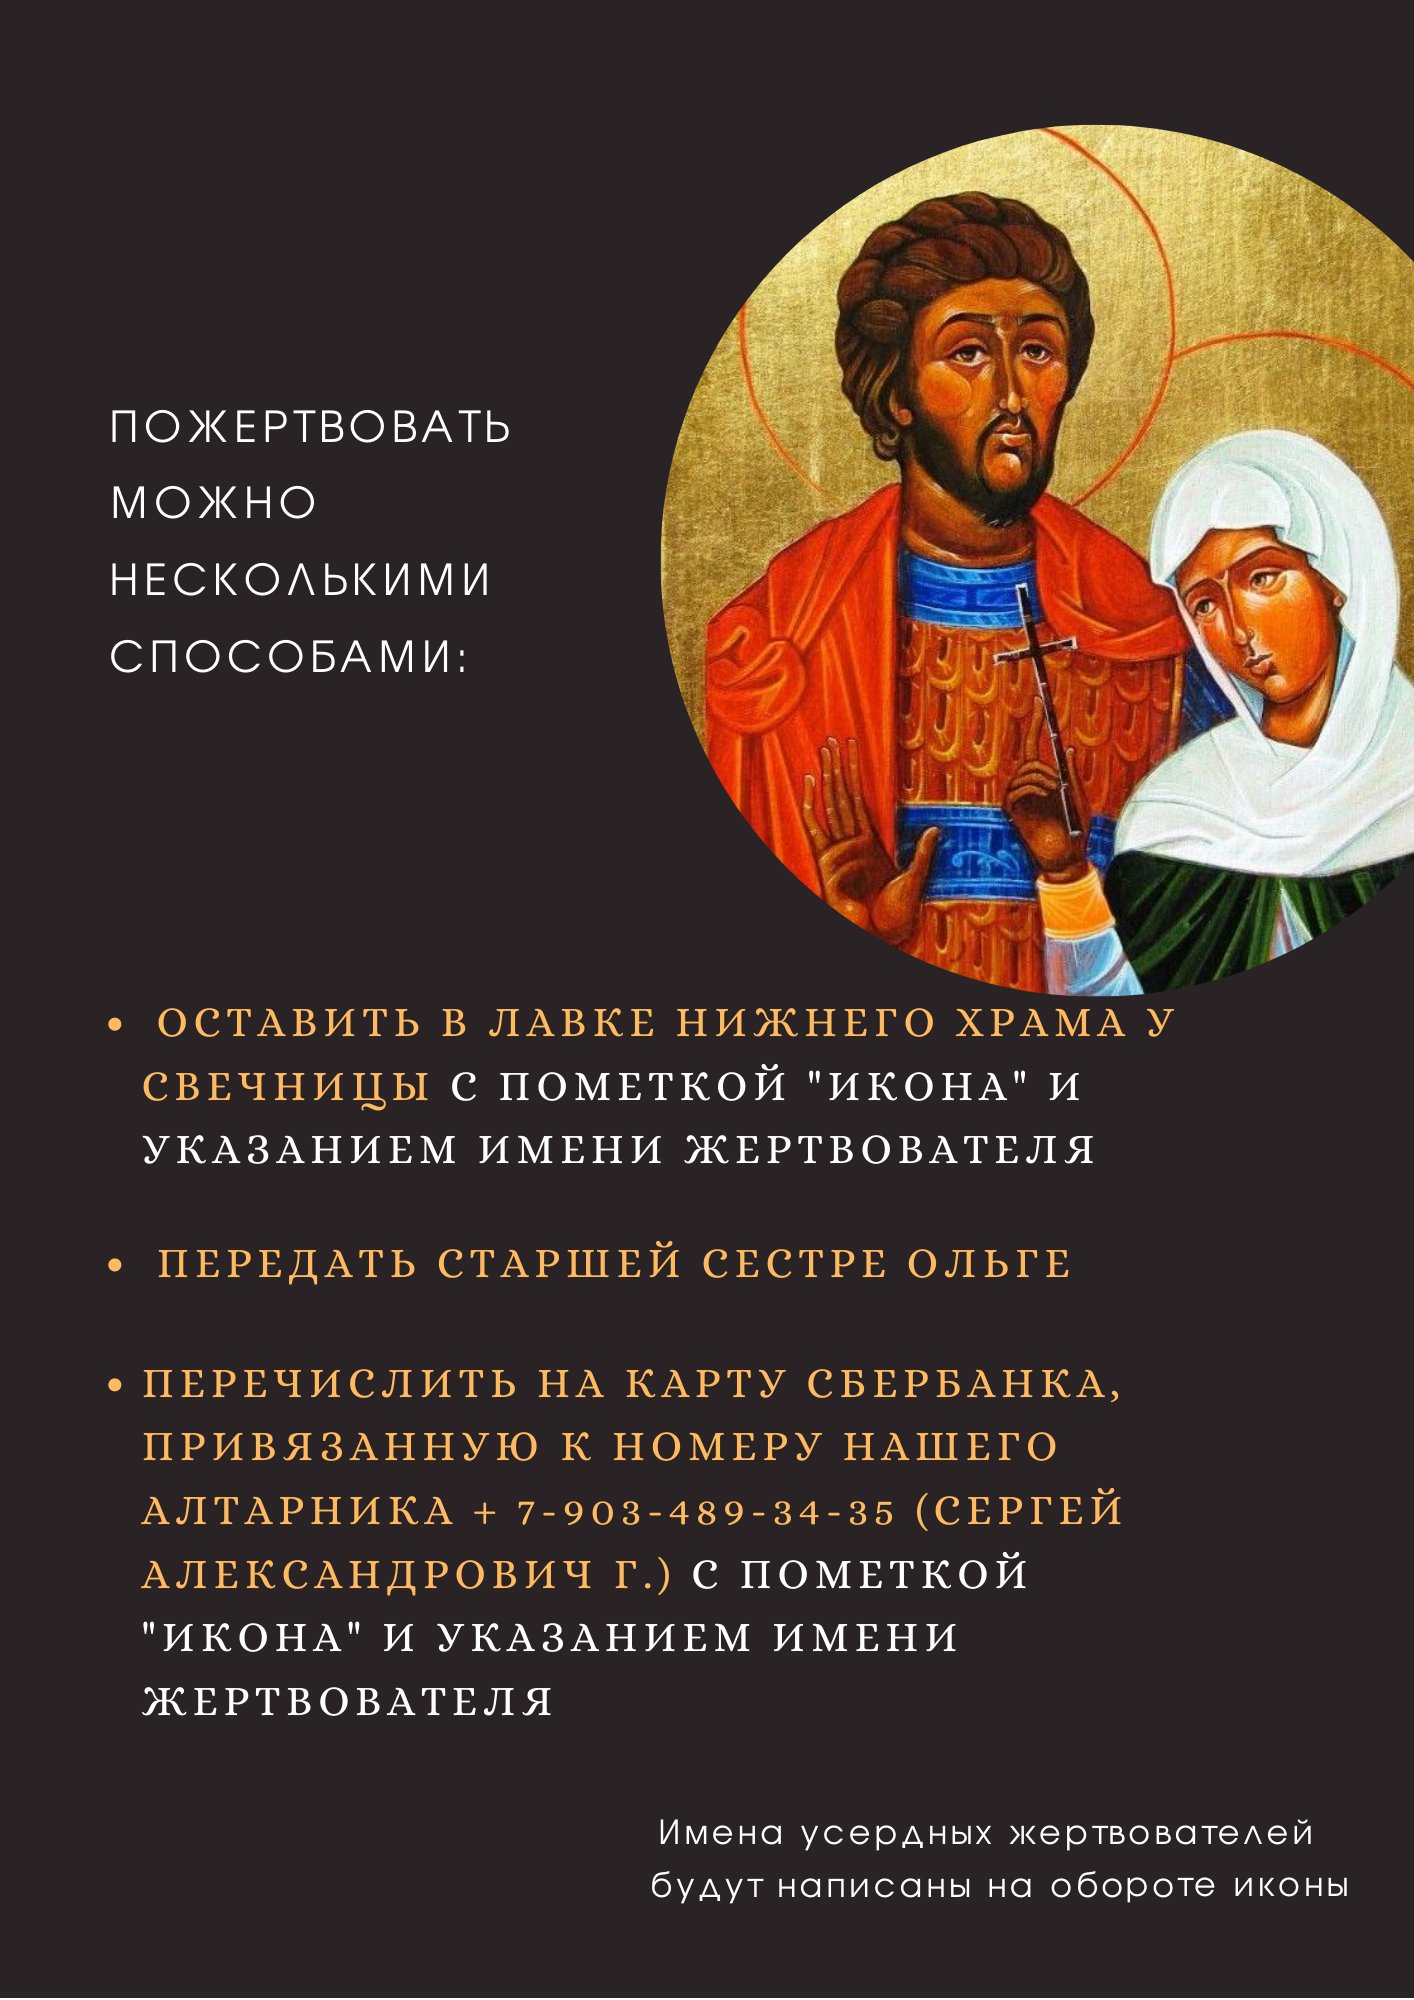 Сбор средств для написания иконы Божией матери «Владимирская» с образами святых мучеников Адриана и Натальи